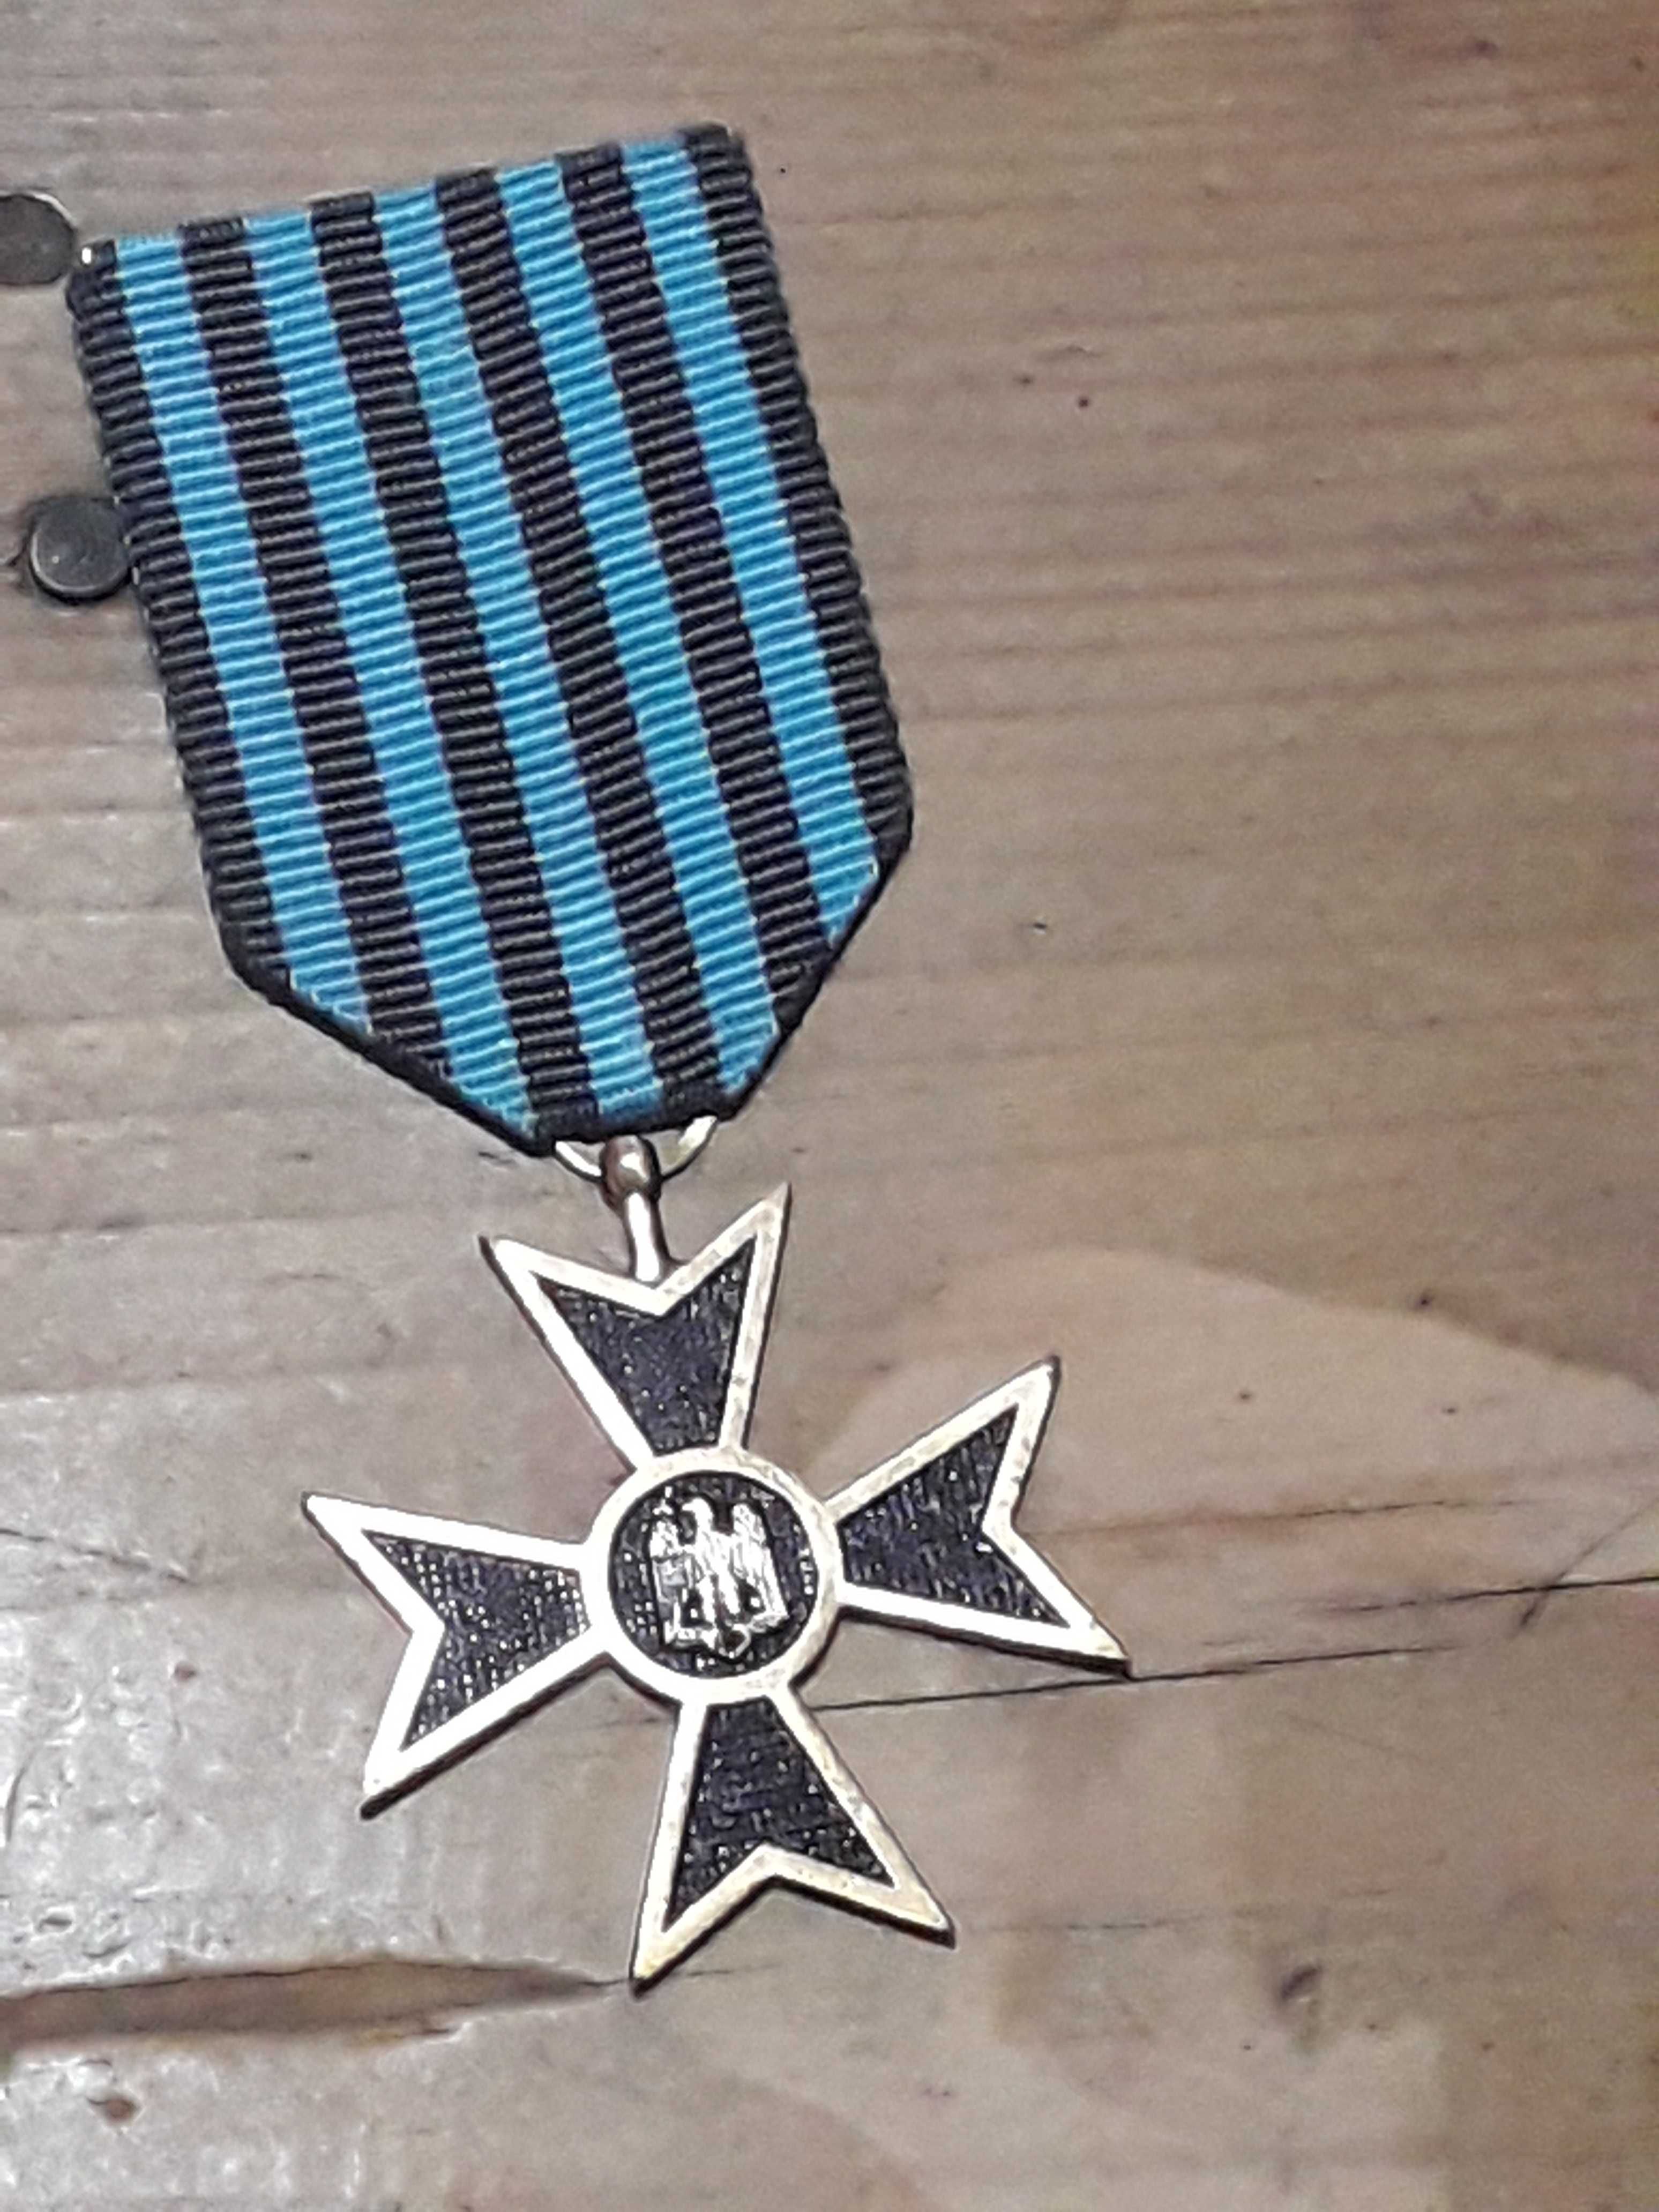 Medalie de onoare din 1941